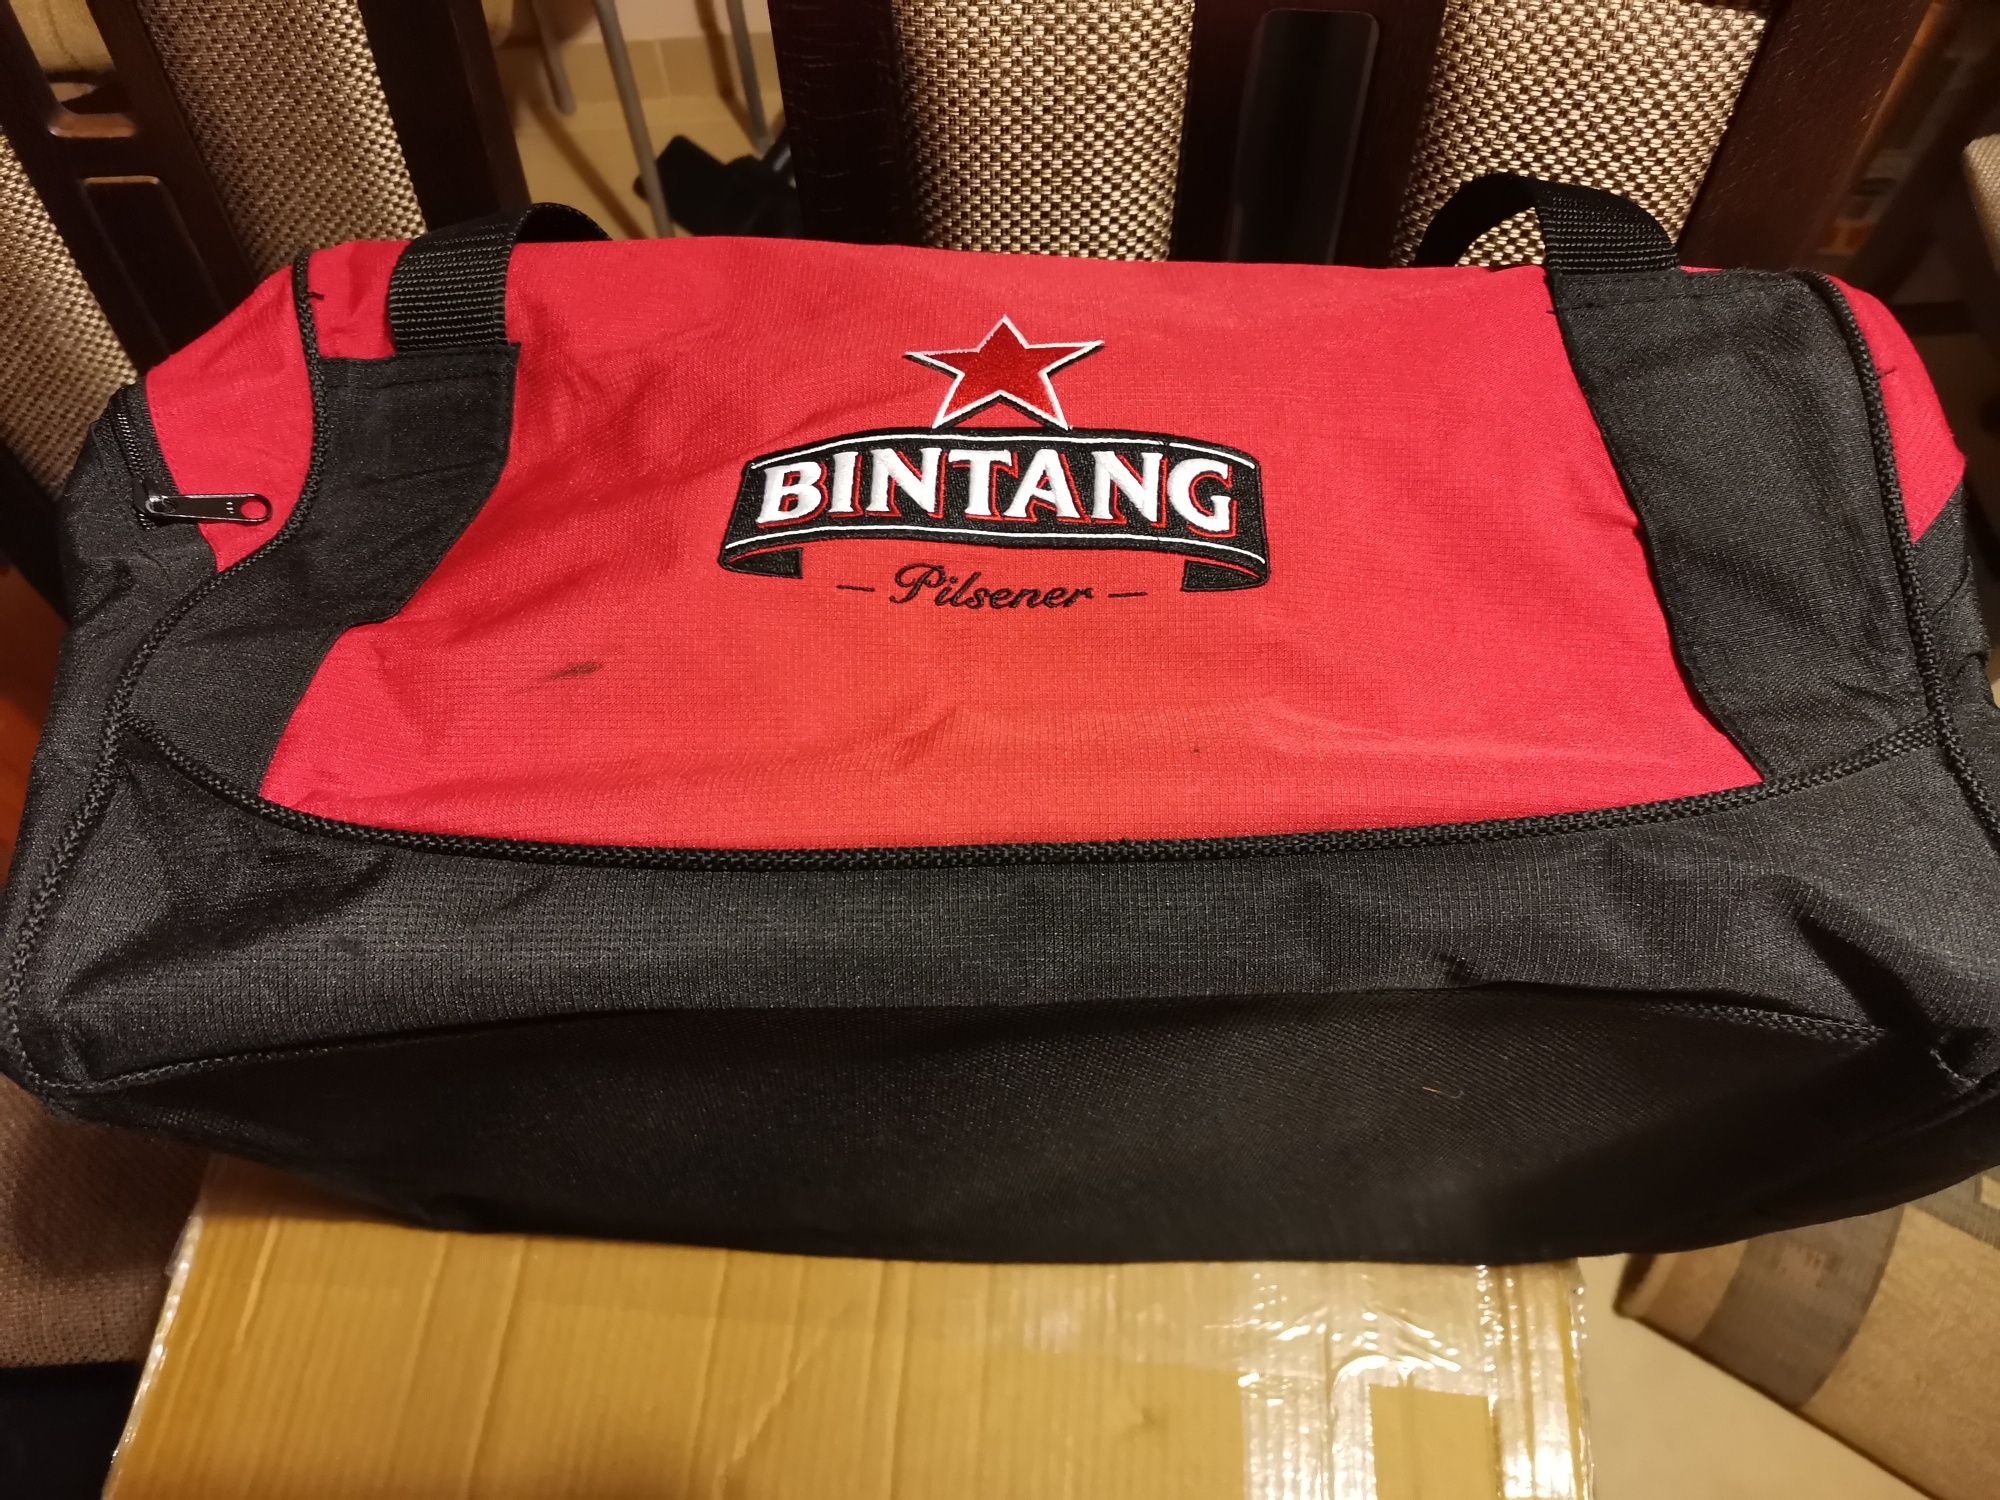 Sprzedam torbę BINTANG - Pilsener -